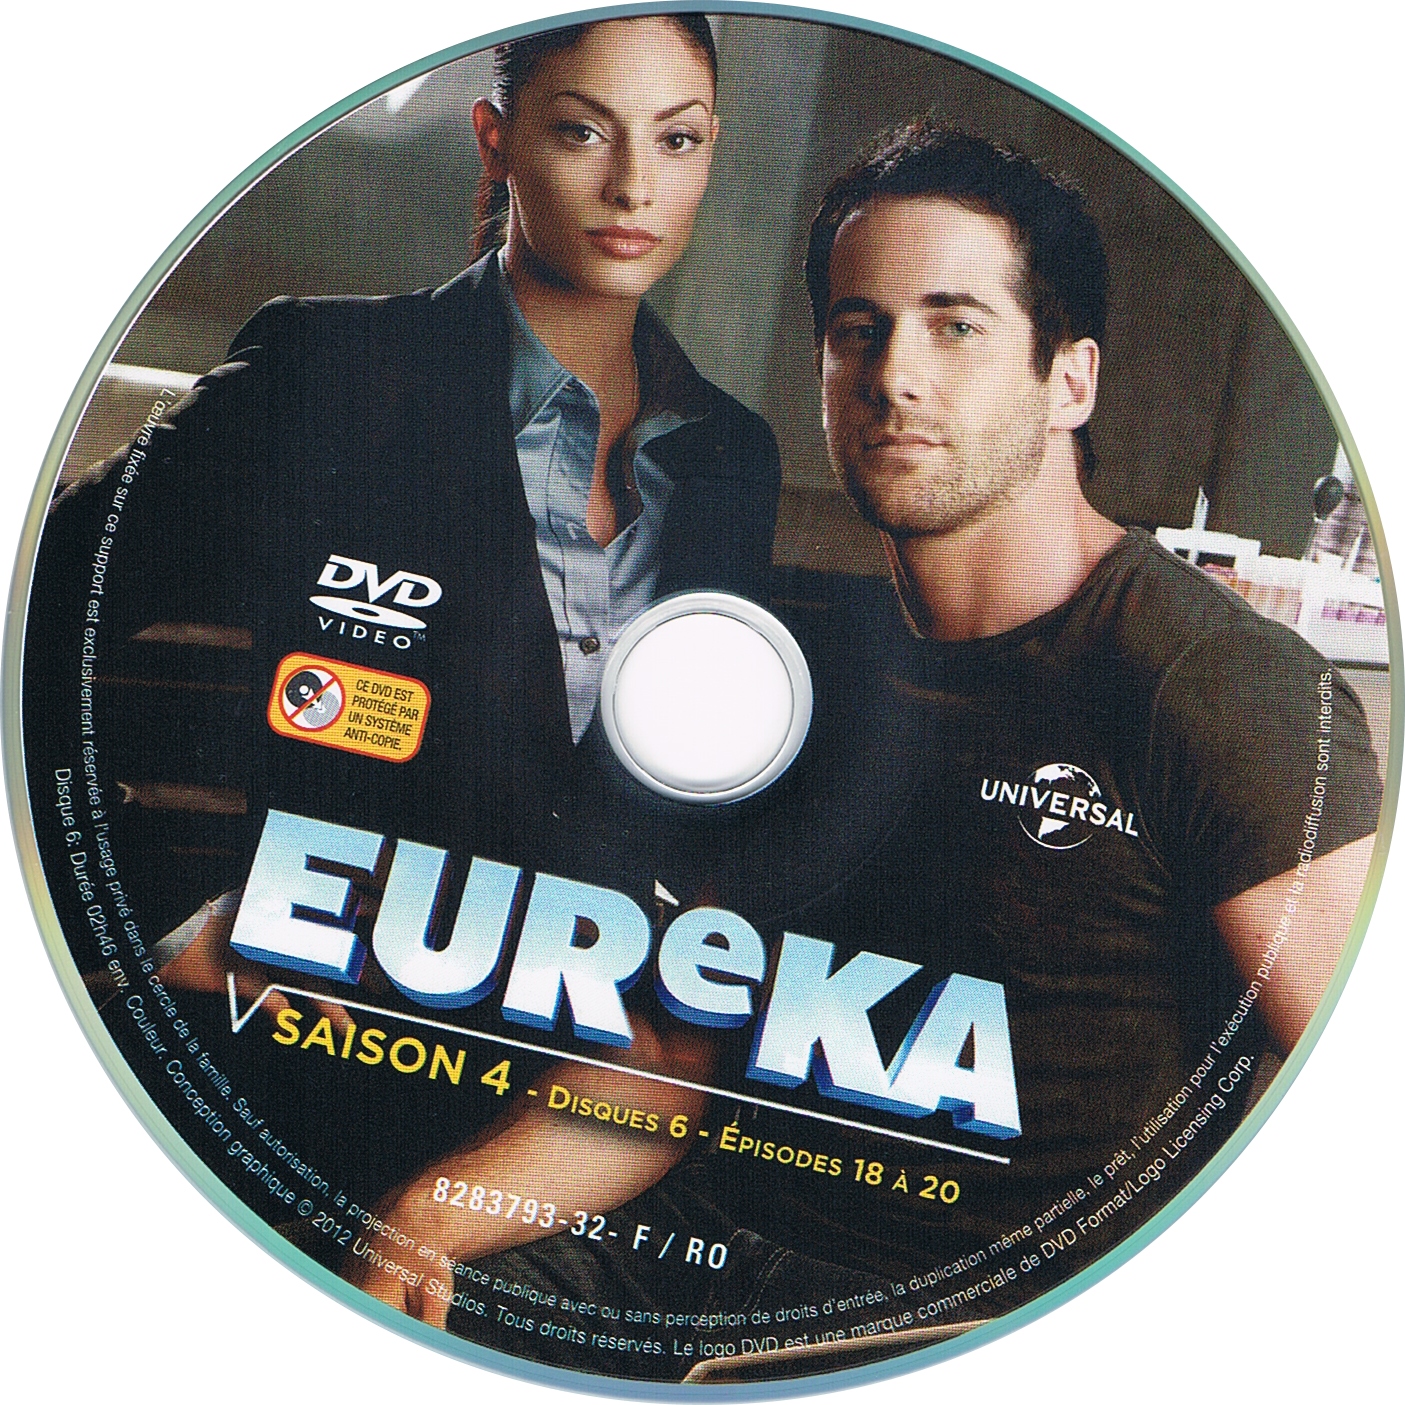 Eureka saison 4 DISC 6